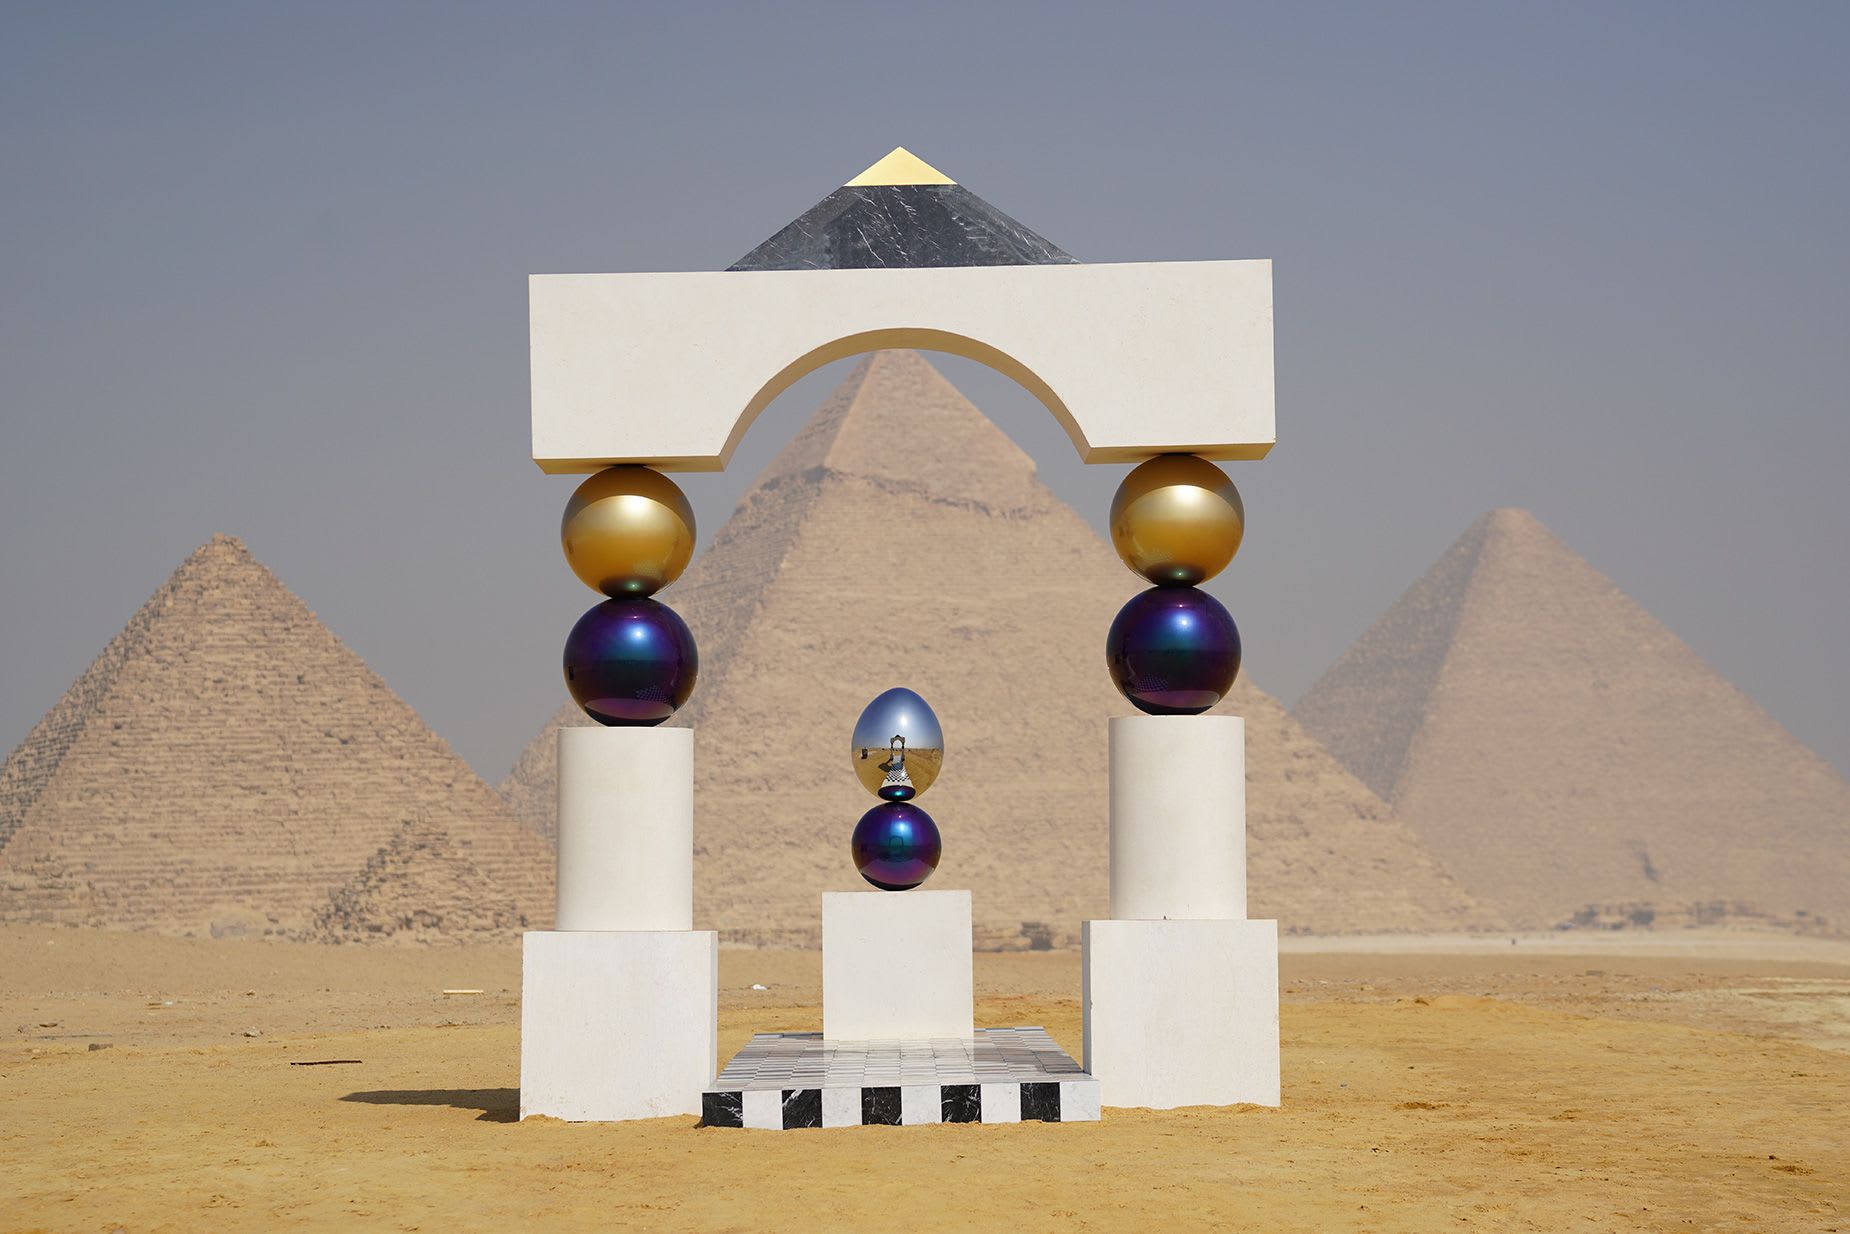 إحداها تجعل الأهرامات تبدو وكأنها تطفو.. تستضيف أشهر معالم مصر أعمالاً فنية مذهلة